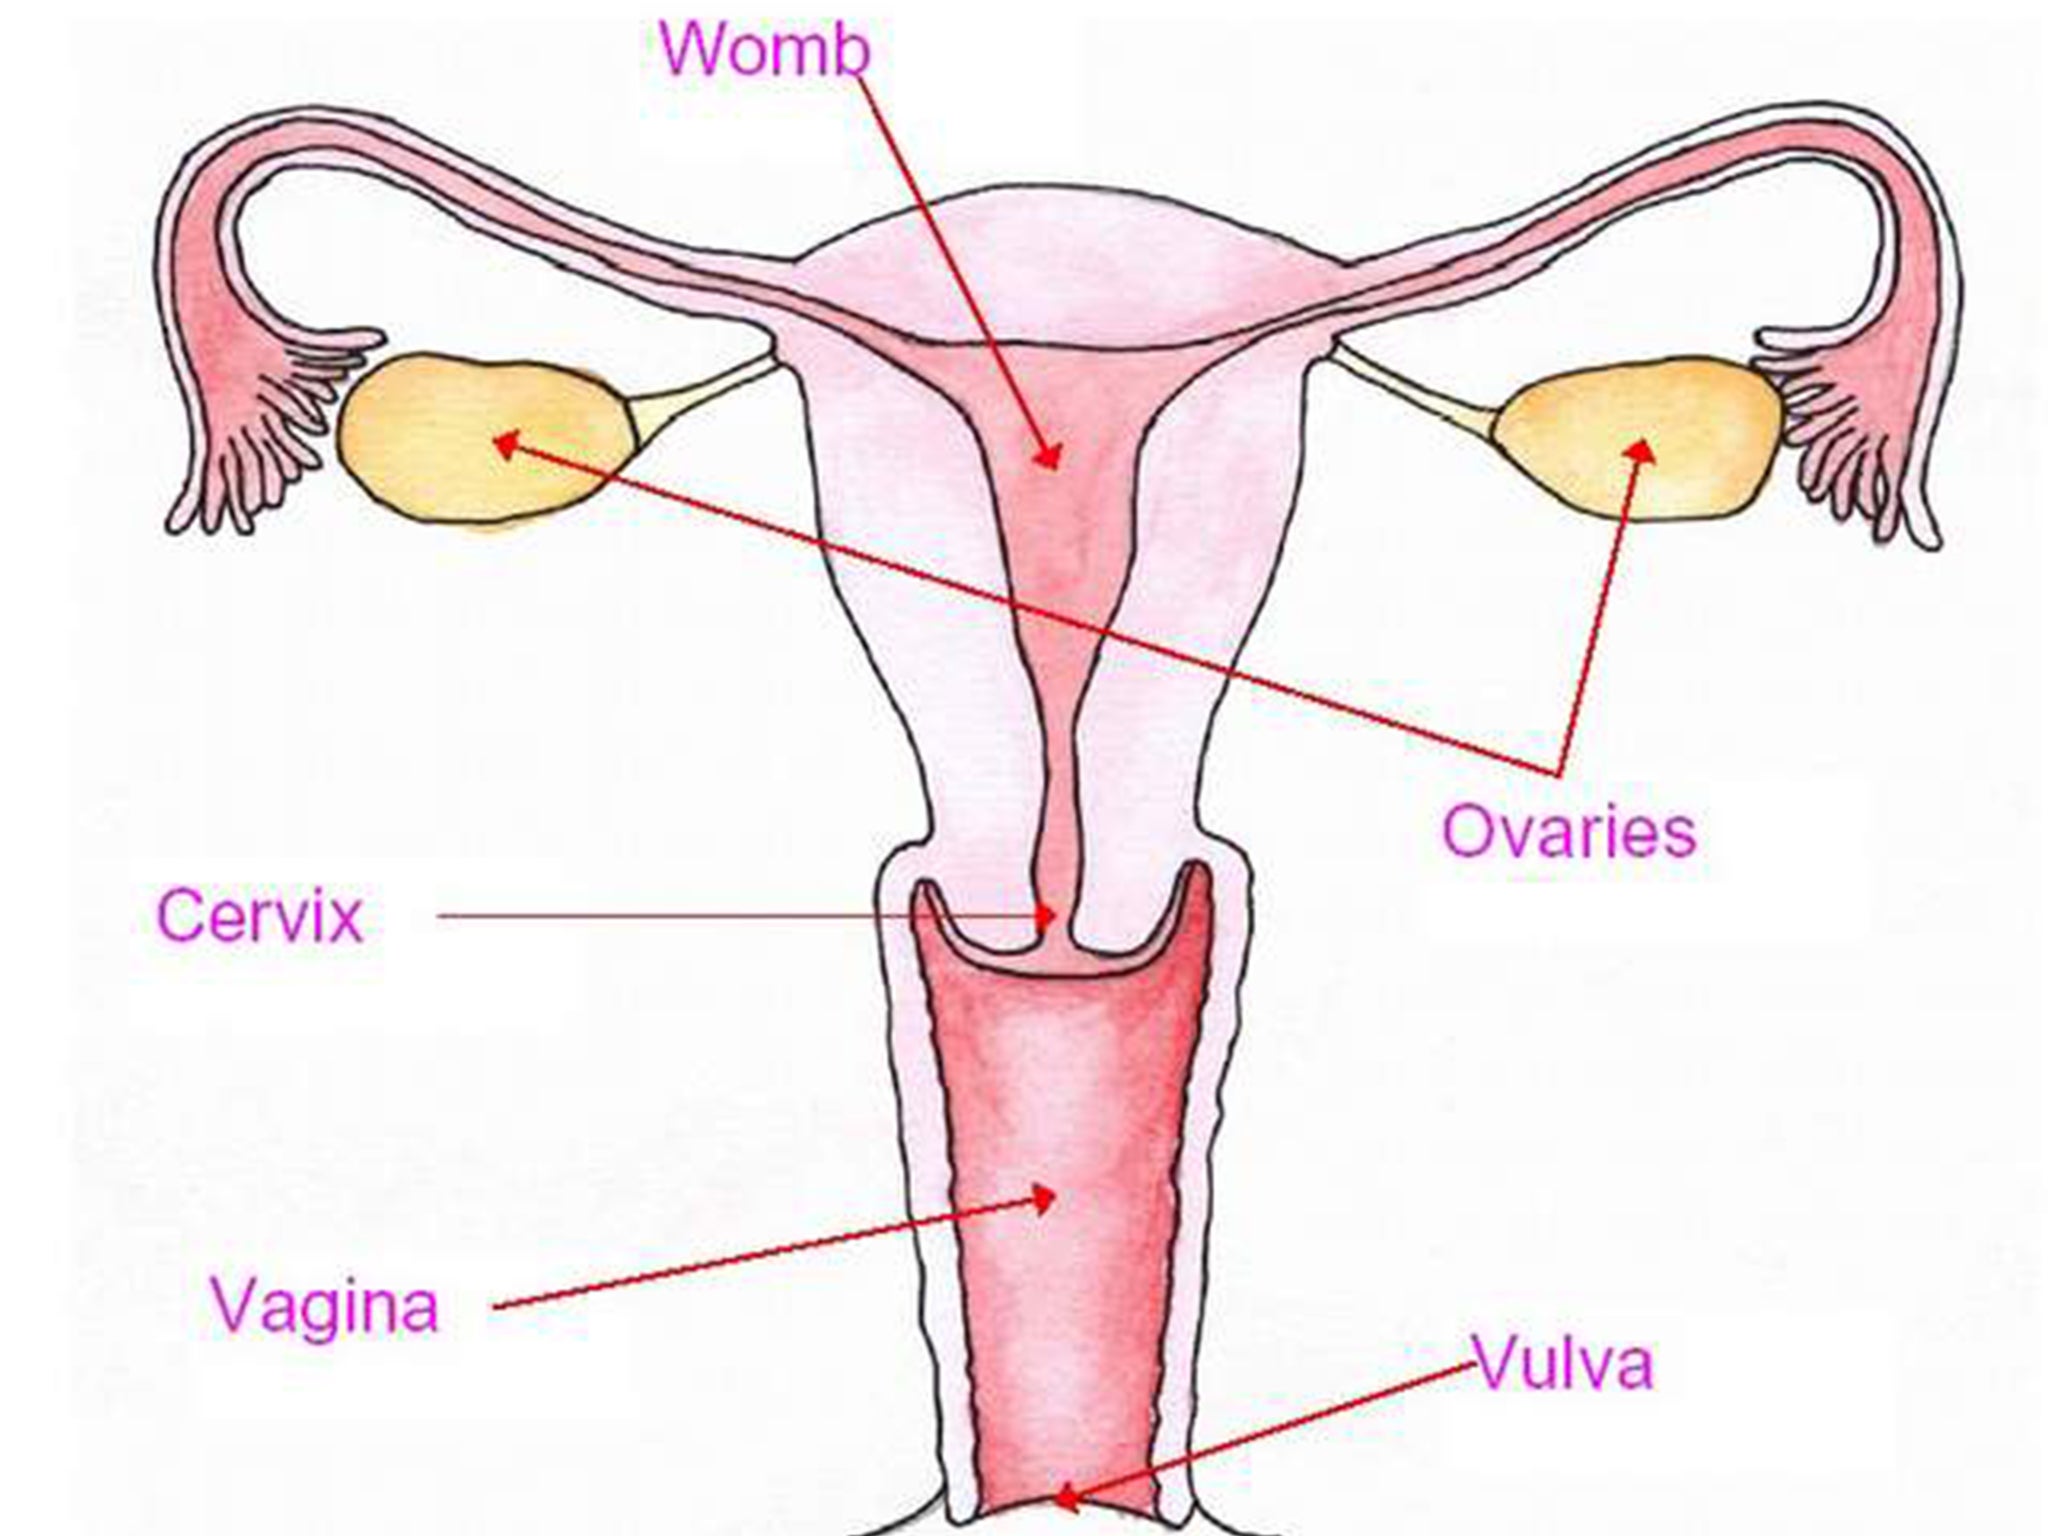 antonio callueng recommends vagina vagina vagina vine pic